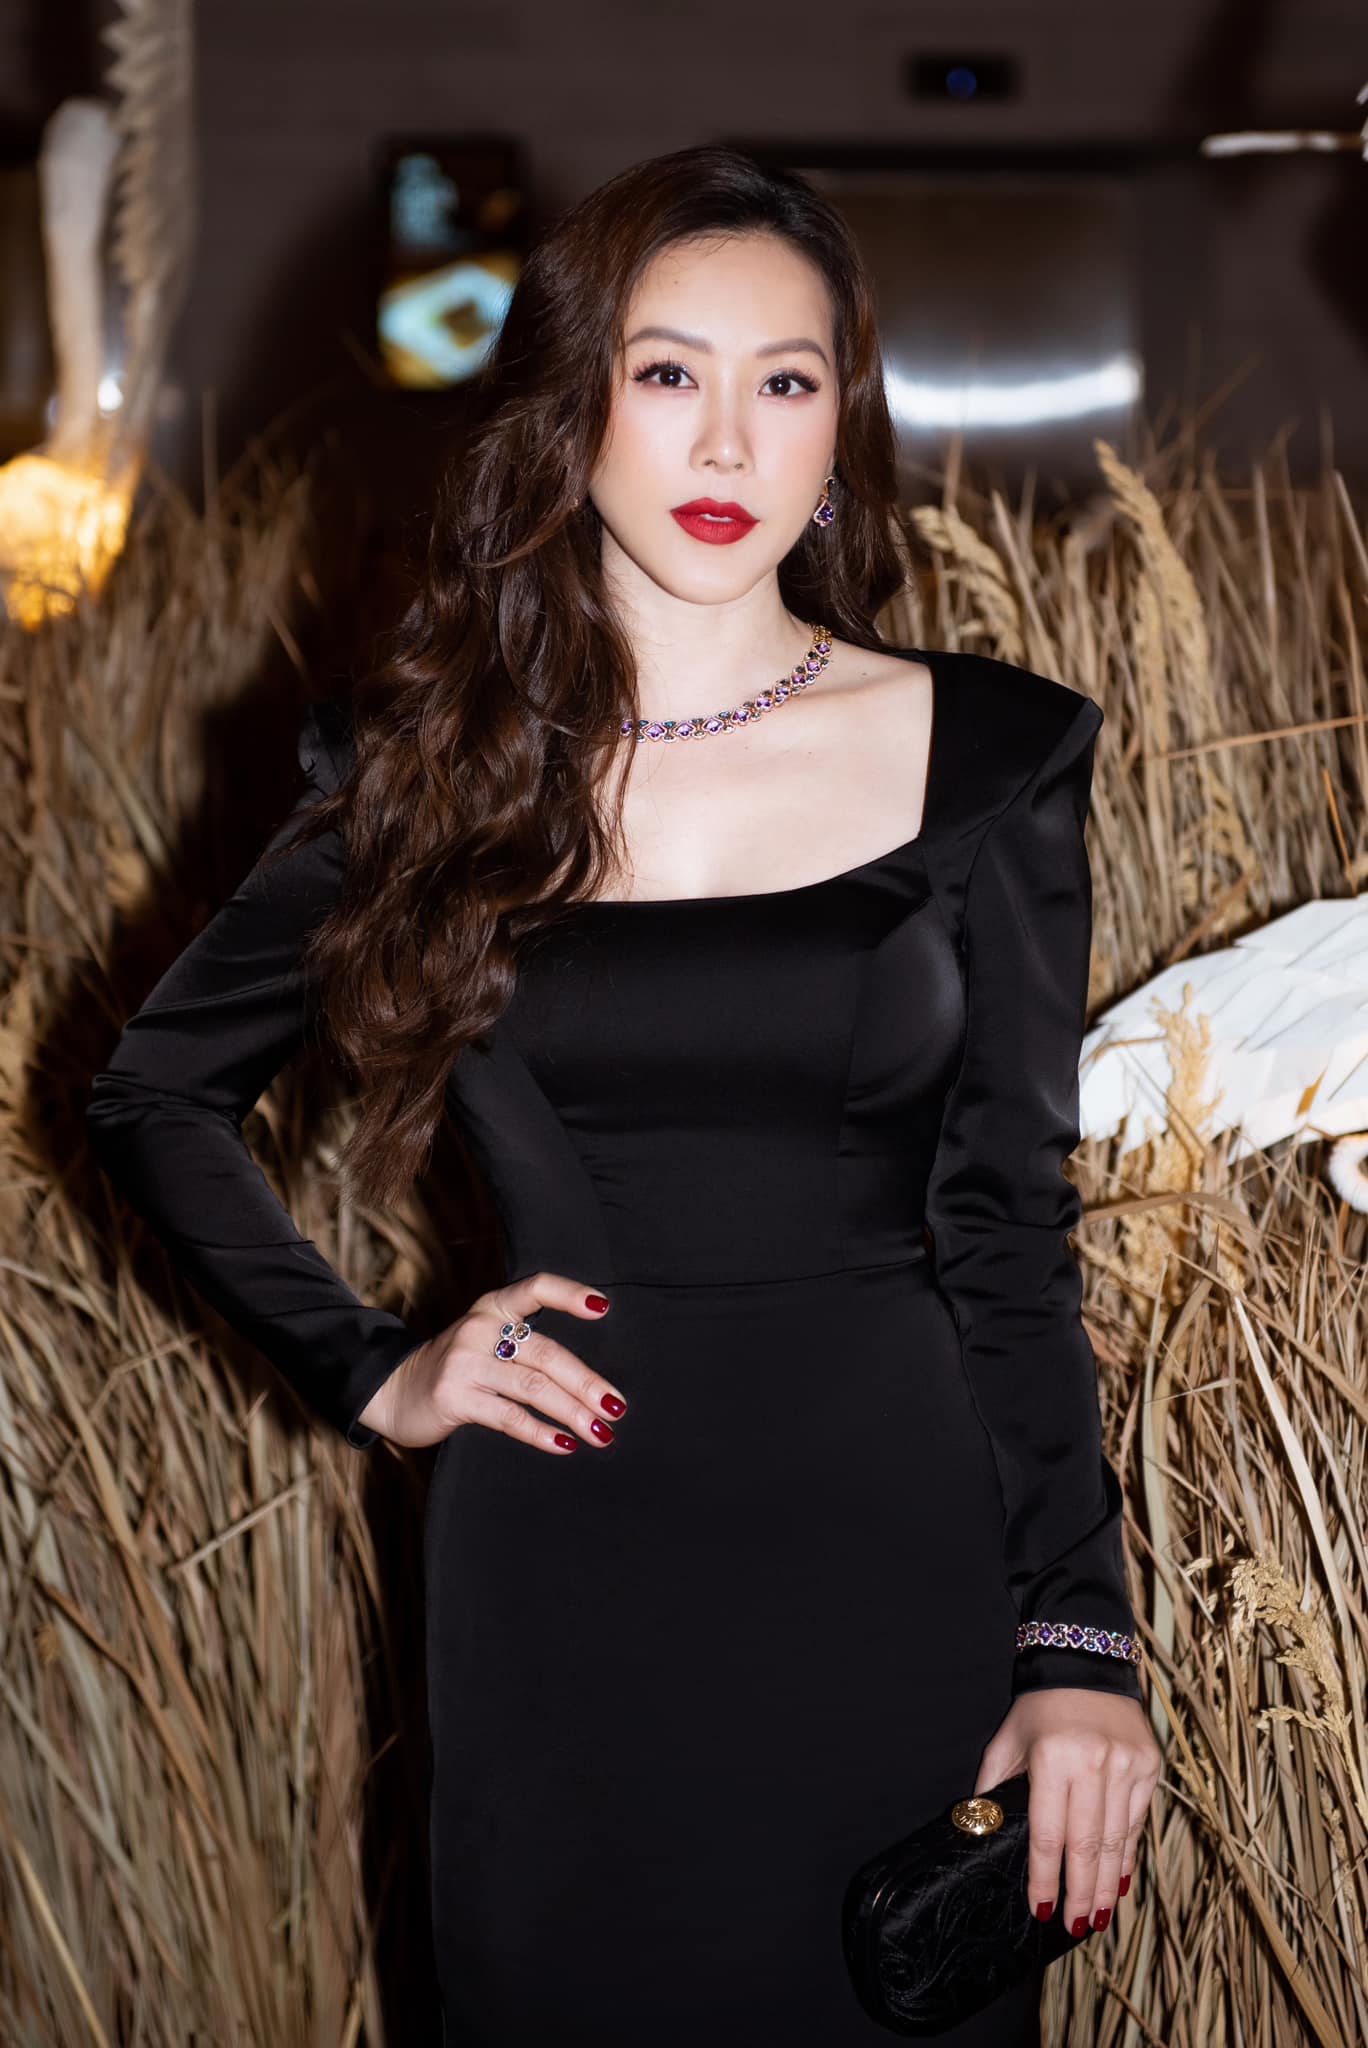 Hoa hậu Thu Hoài xác nhận ly hôn chồng doanh nhân